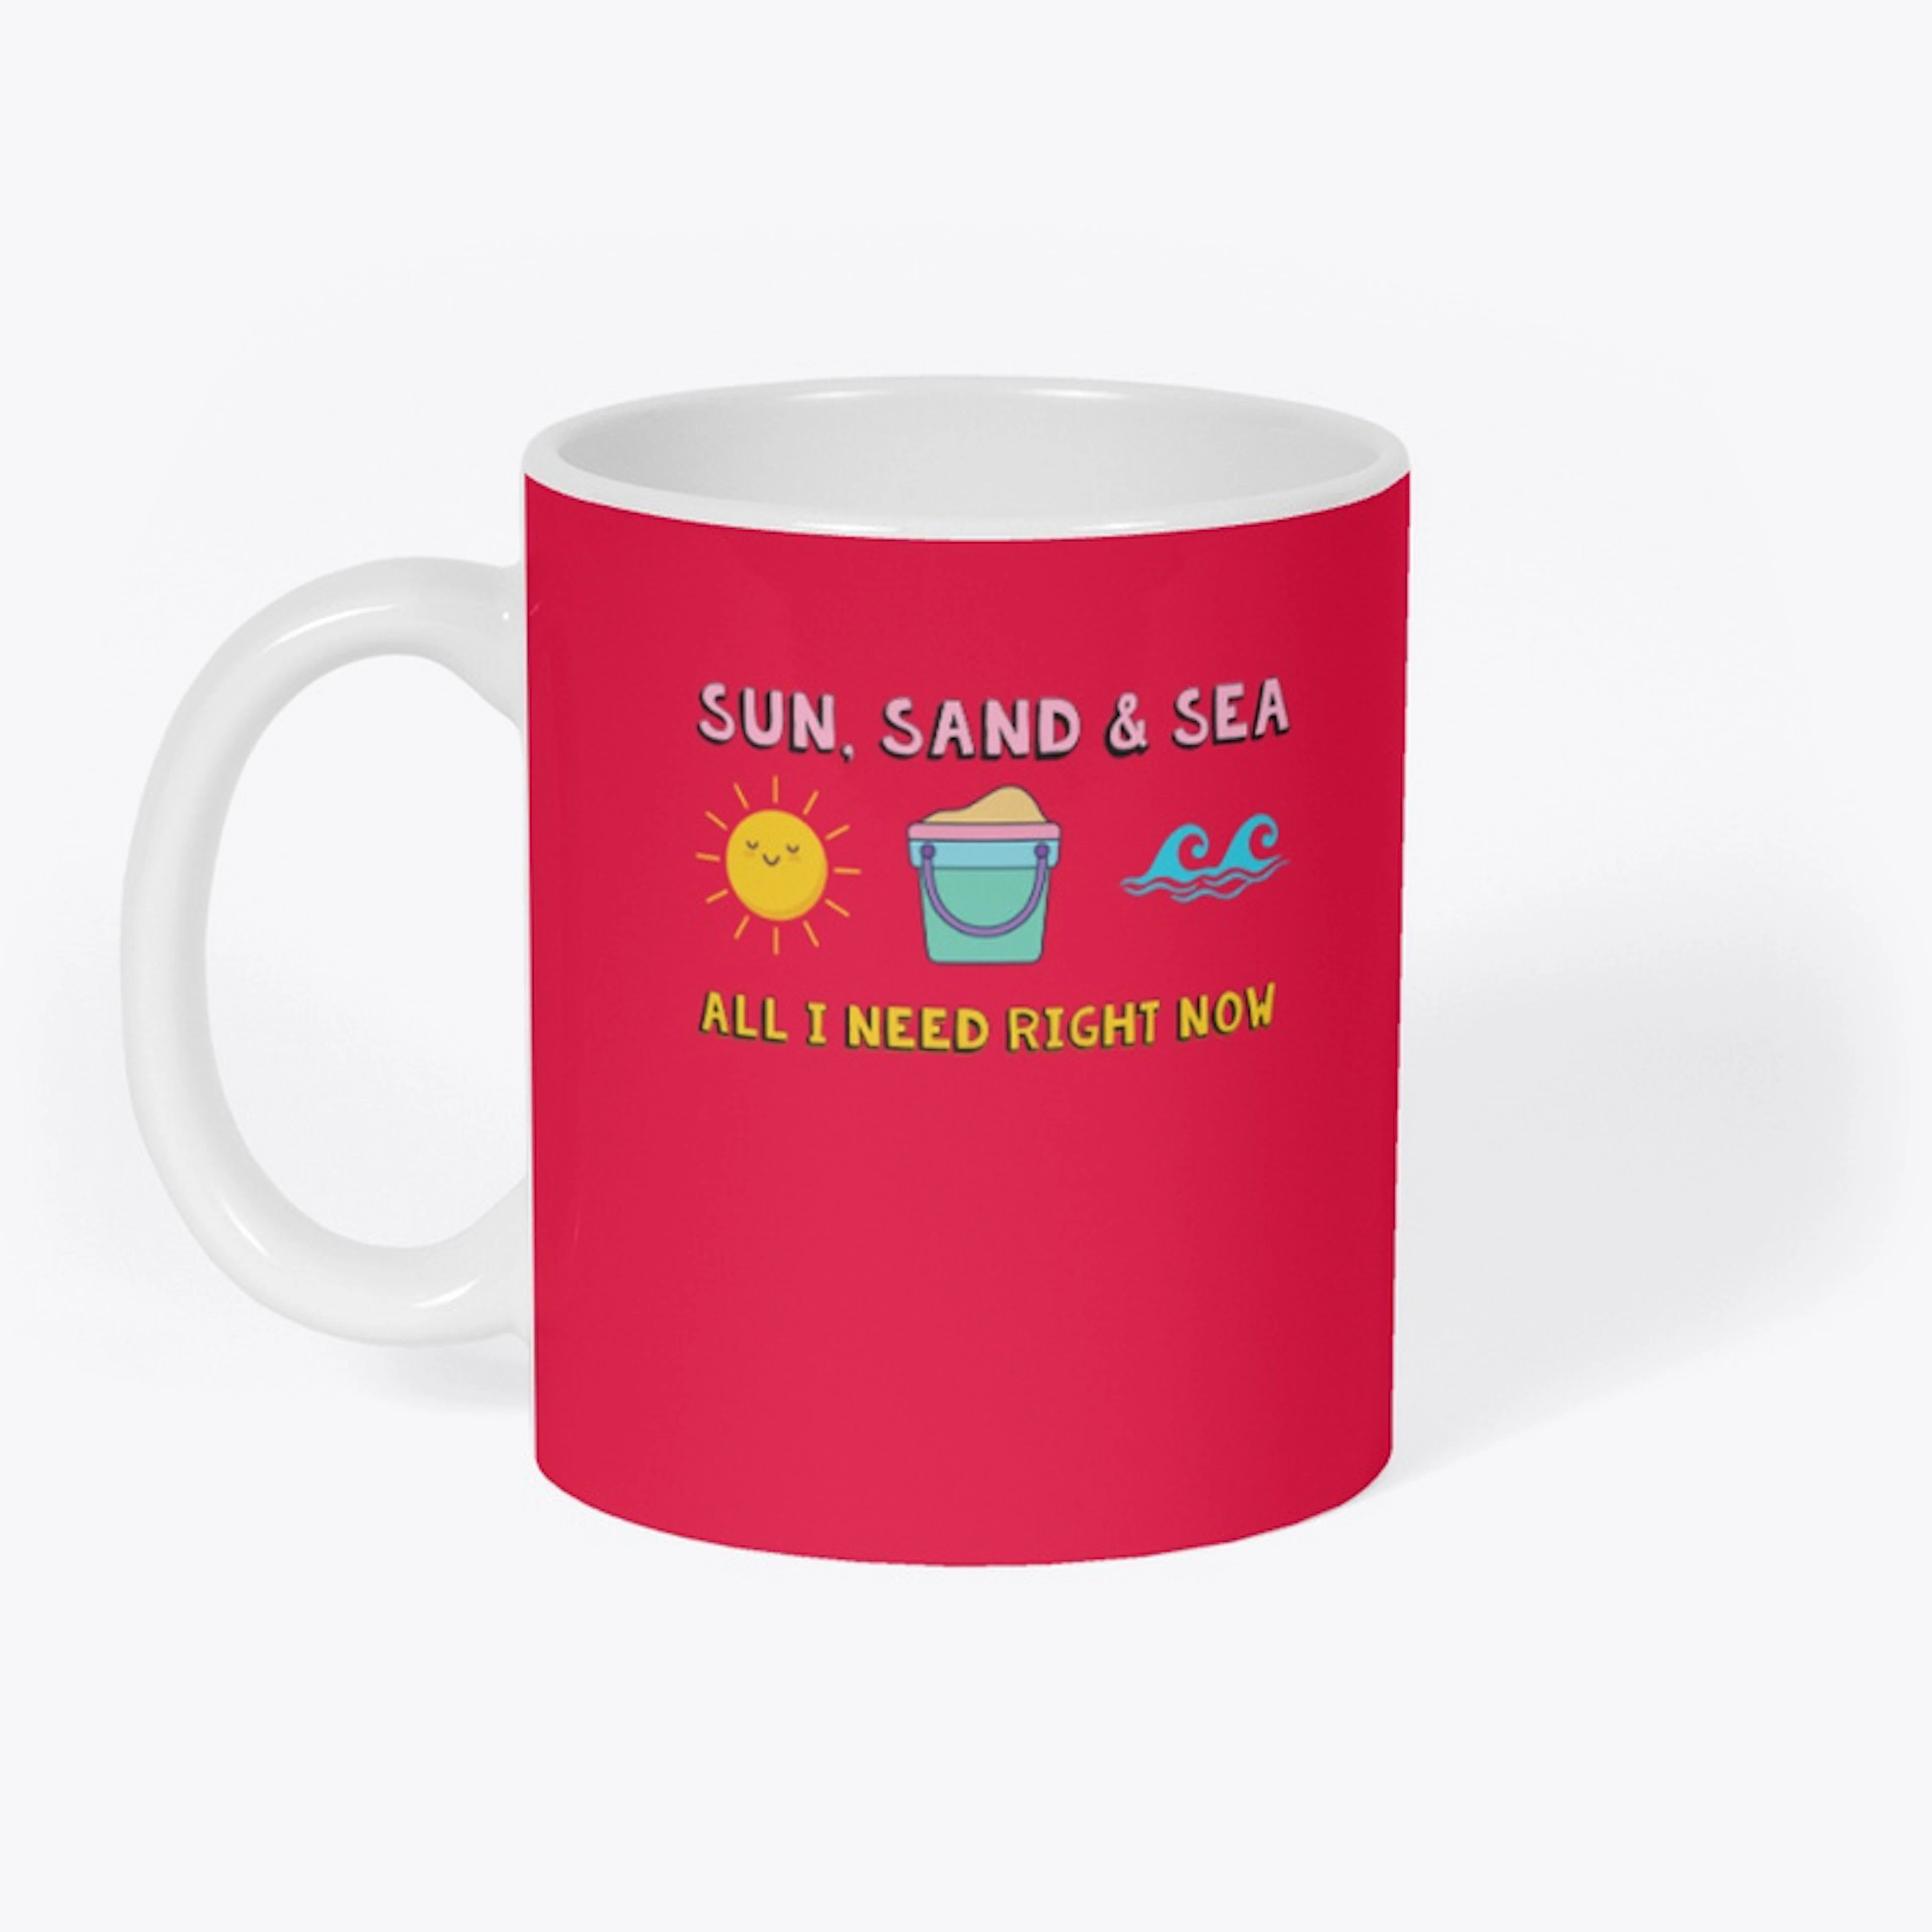 Sun, sand & sea